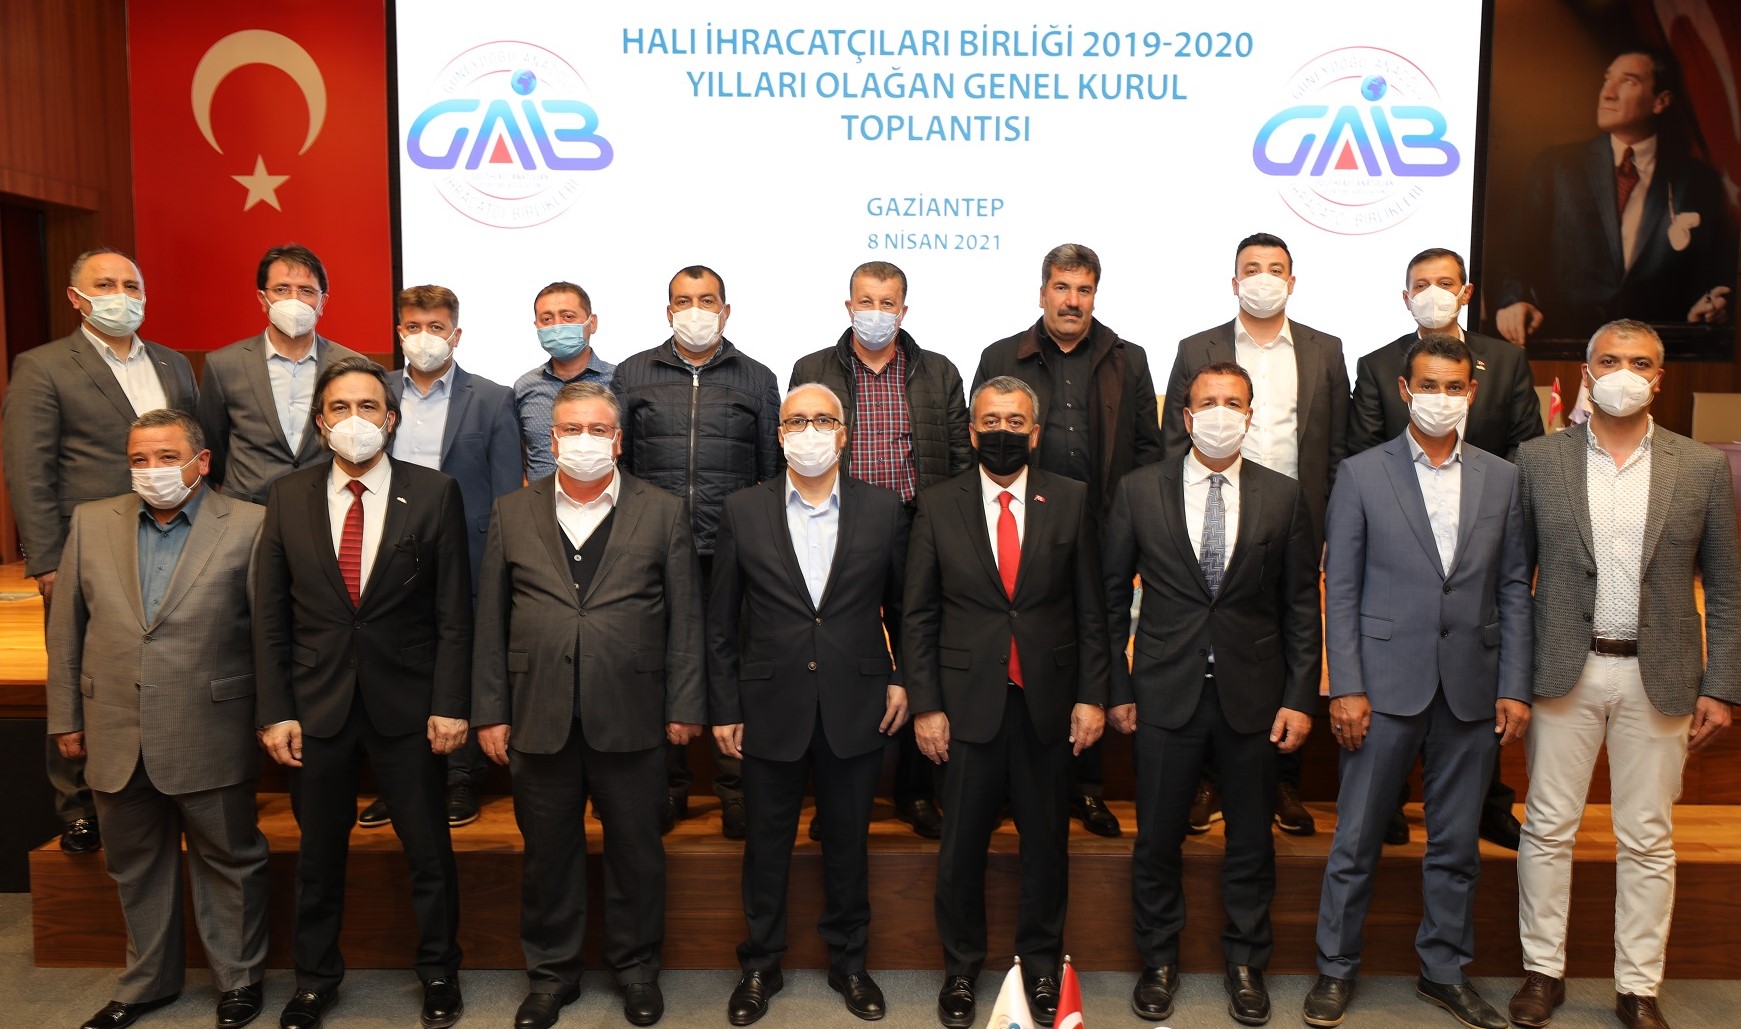 GAİB 2019-2020 Yılları Olağan Genel Kurul Toplantıları Düzenlendi